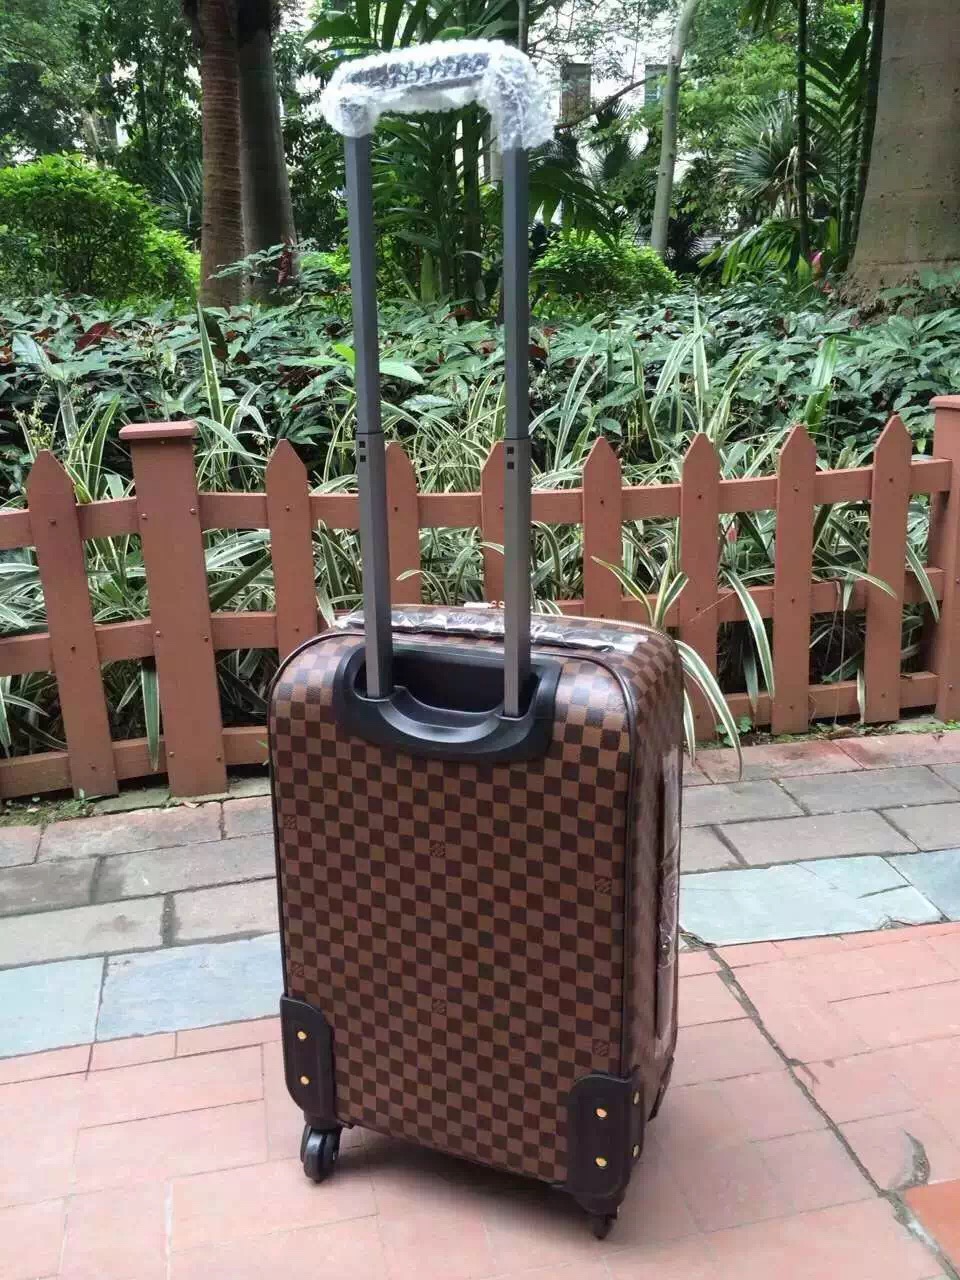 High Quality LV Luggage Bags LV005